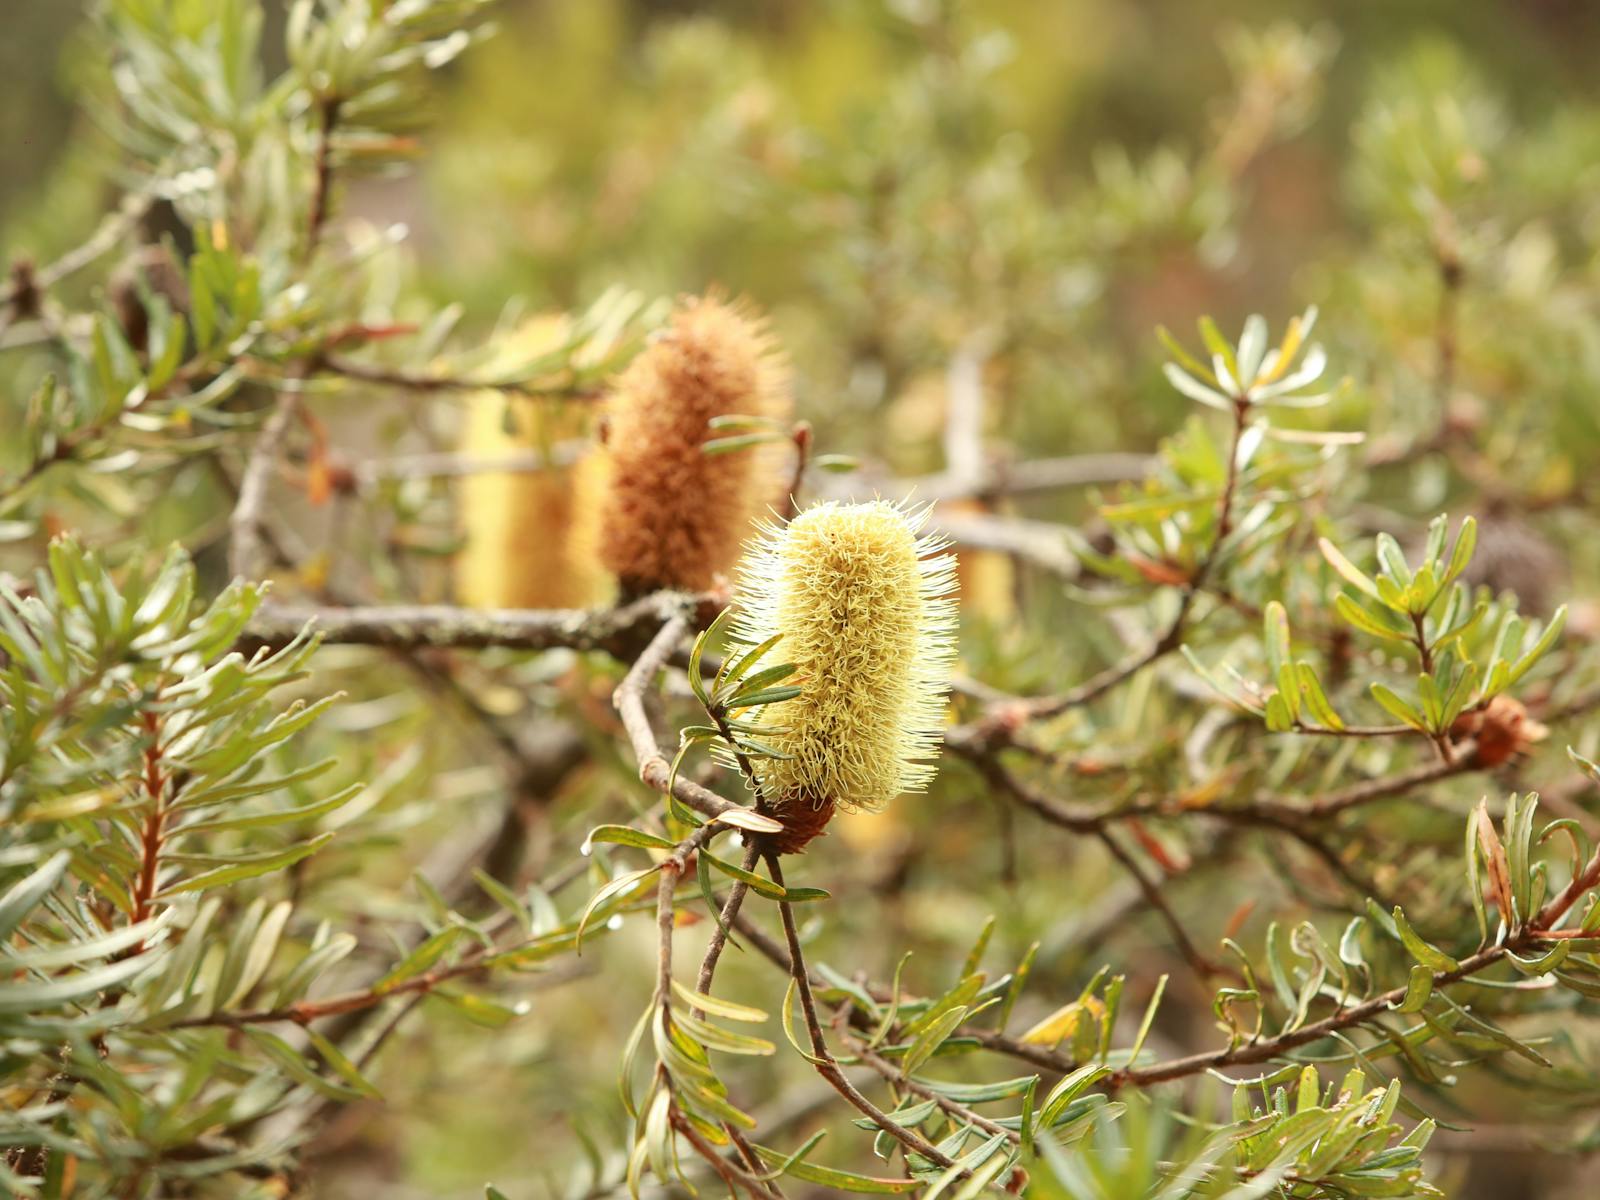 Tasmania Banksia